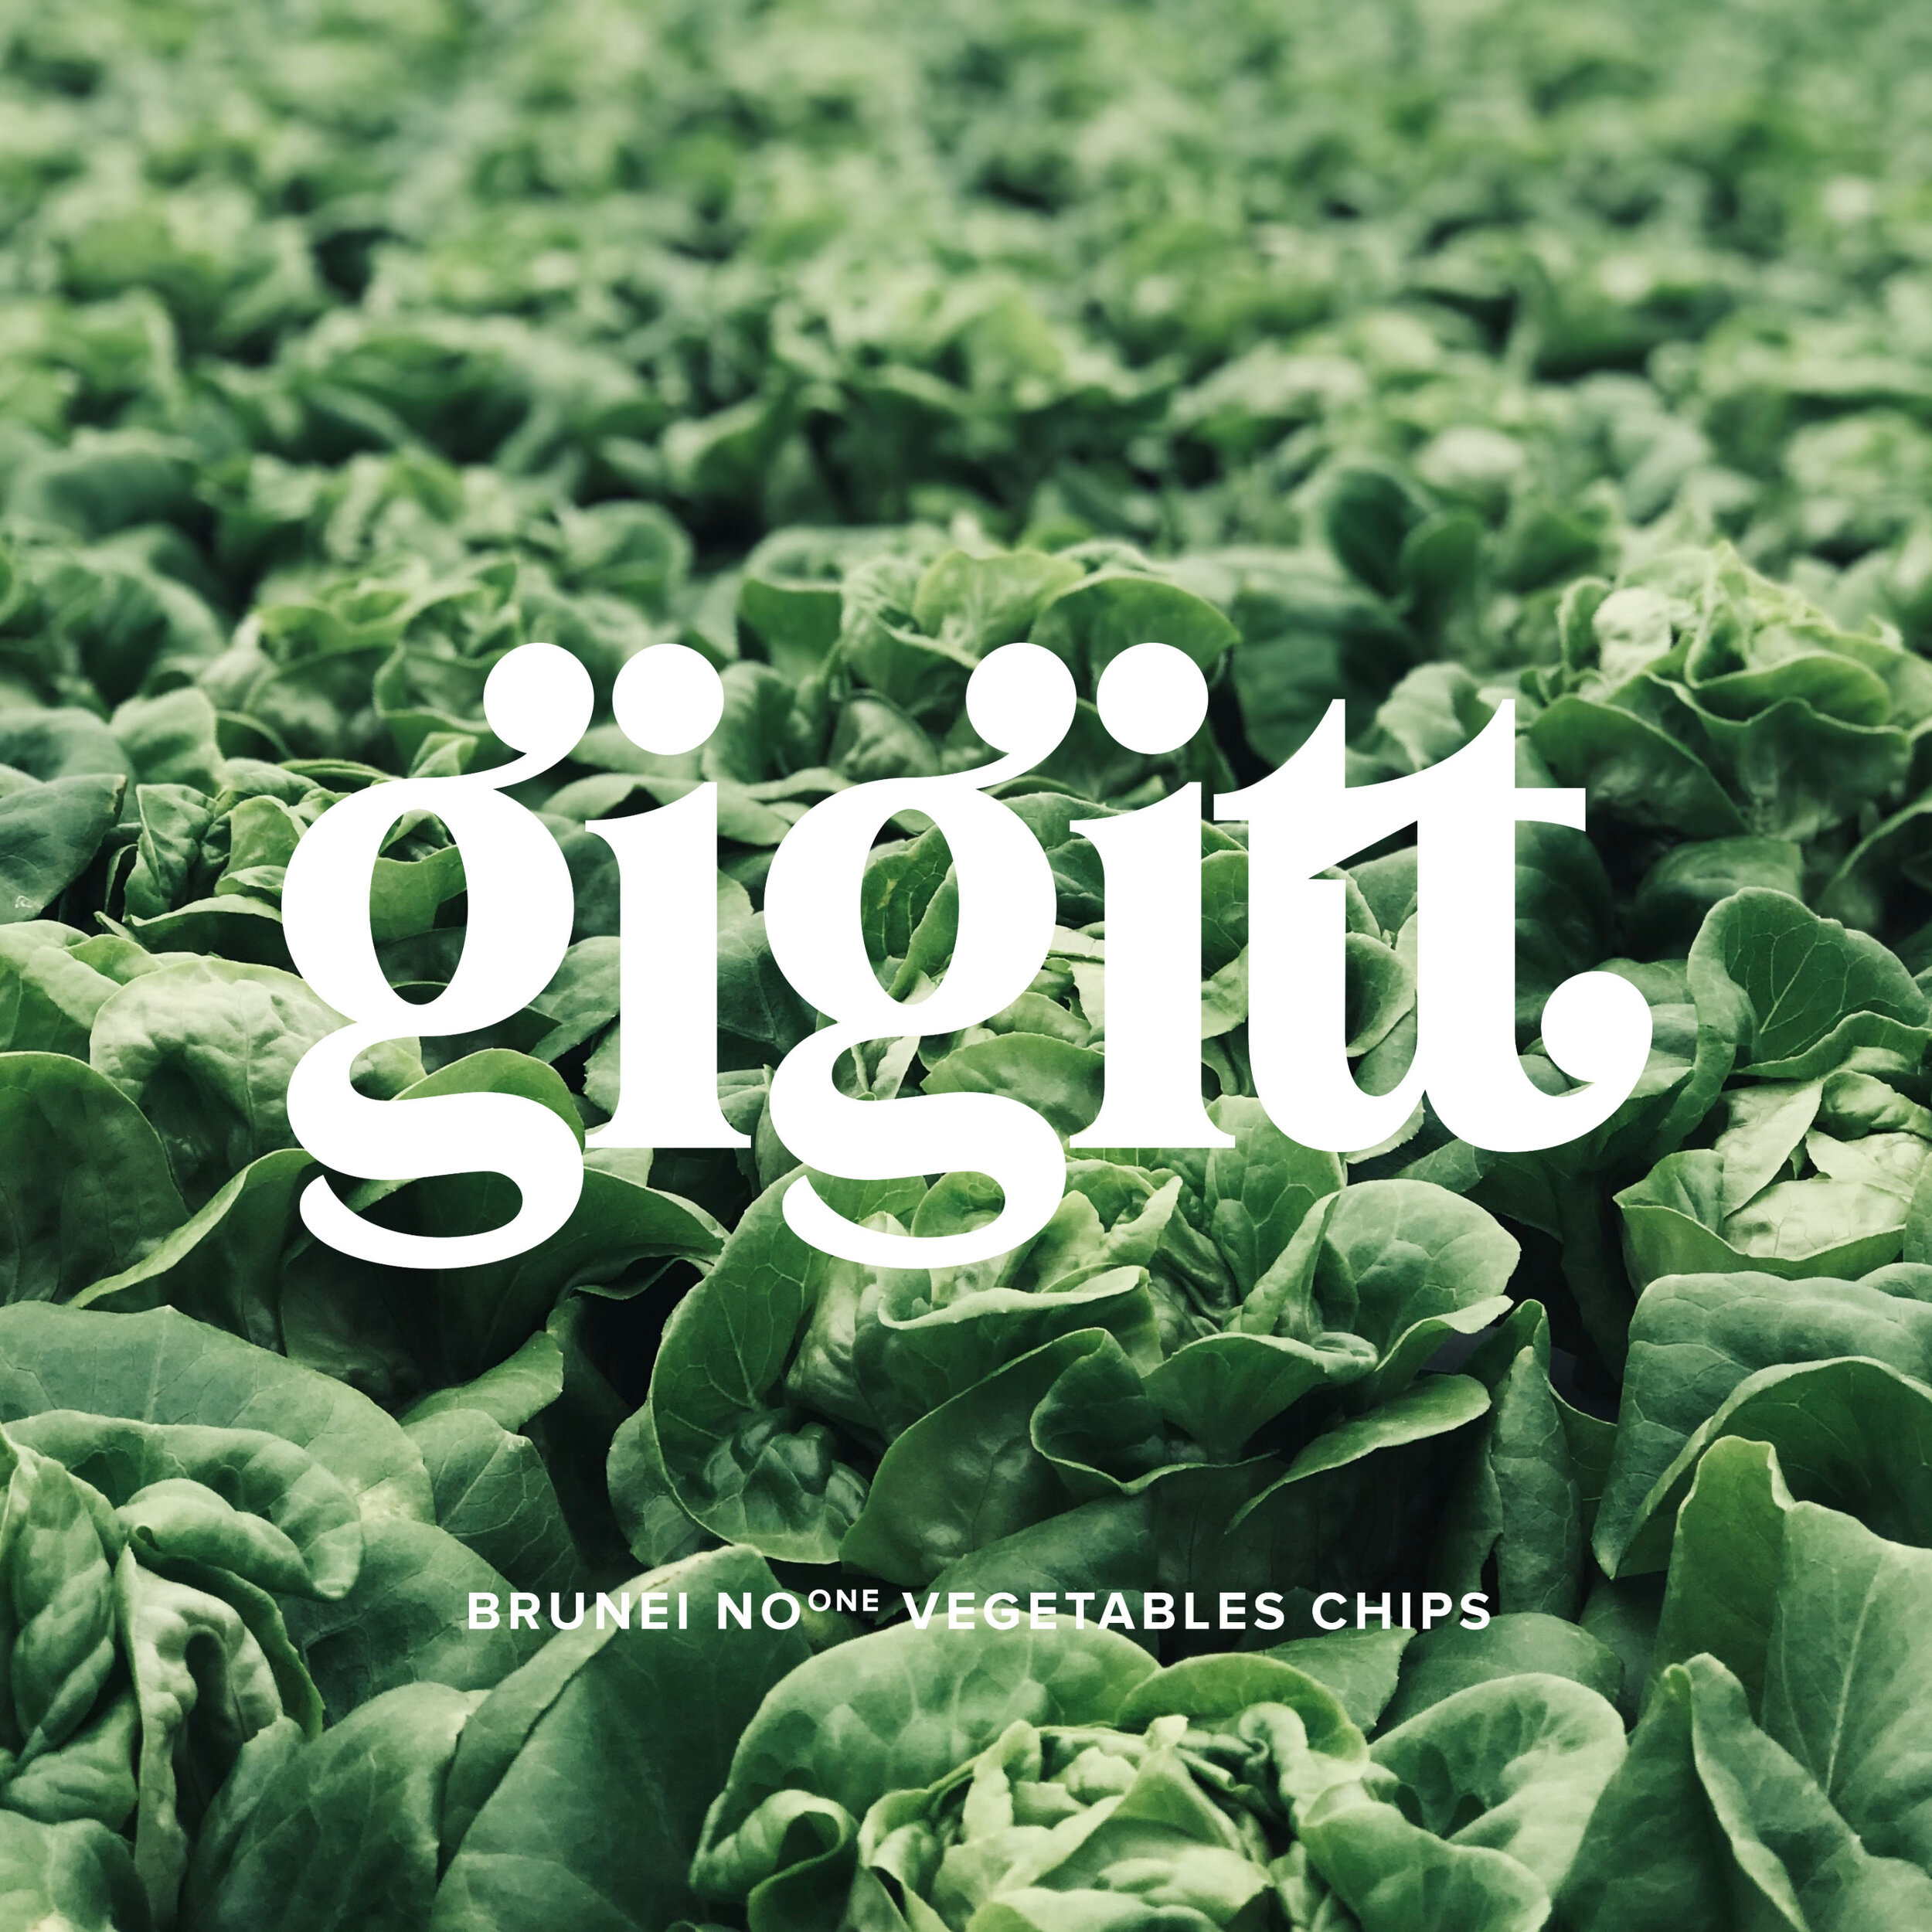 Gigitt Logo on background.jpg